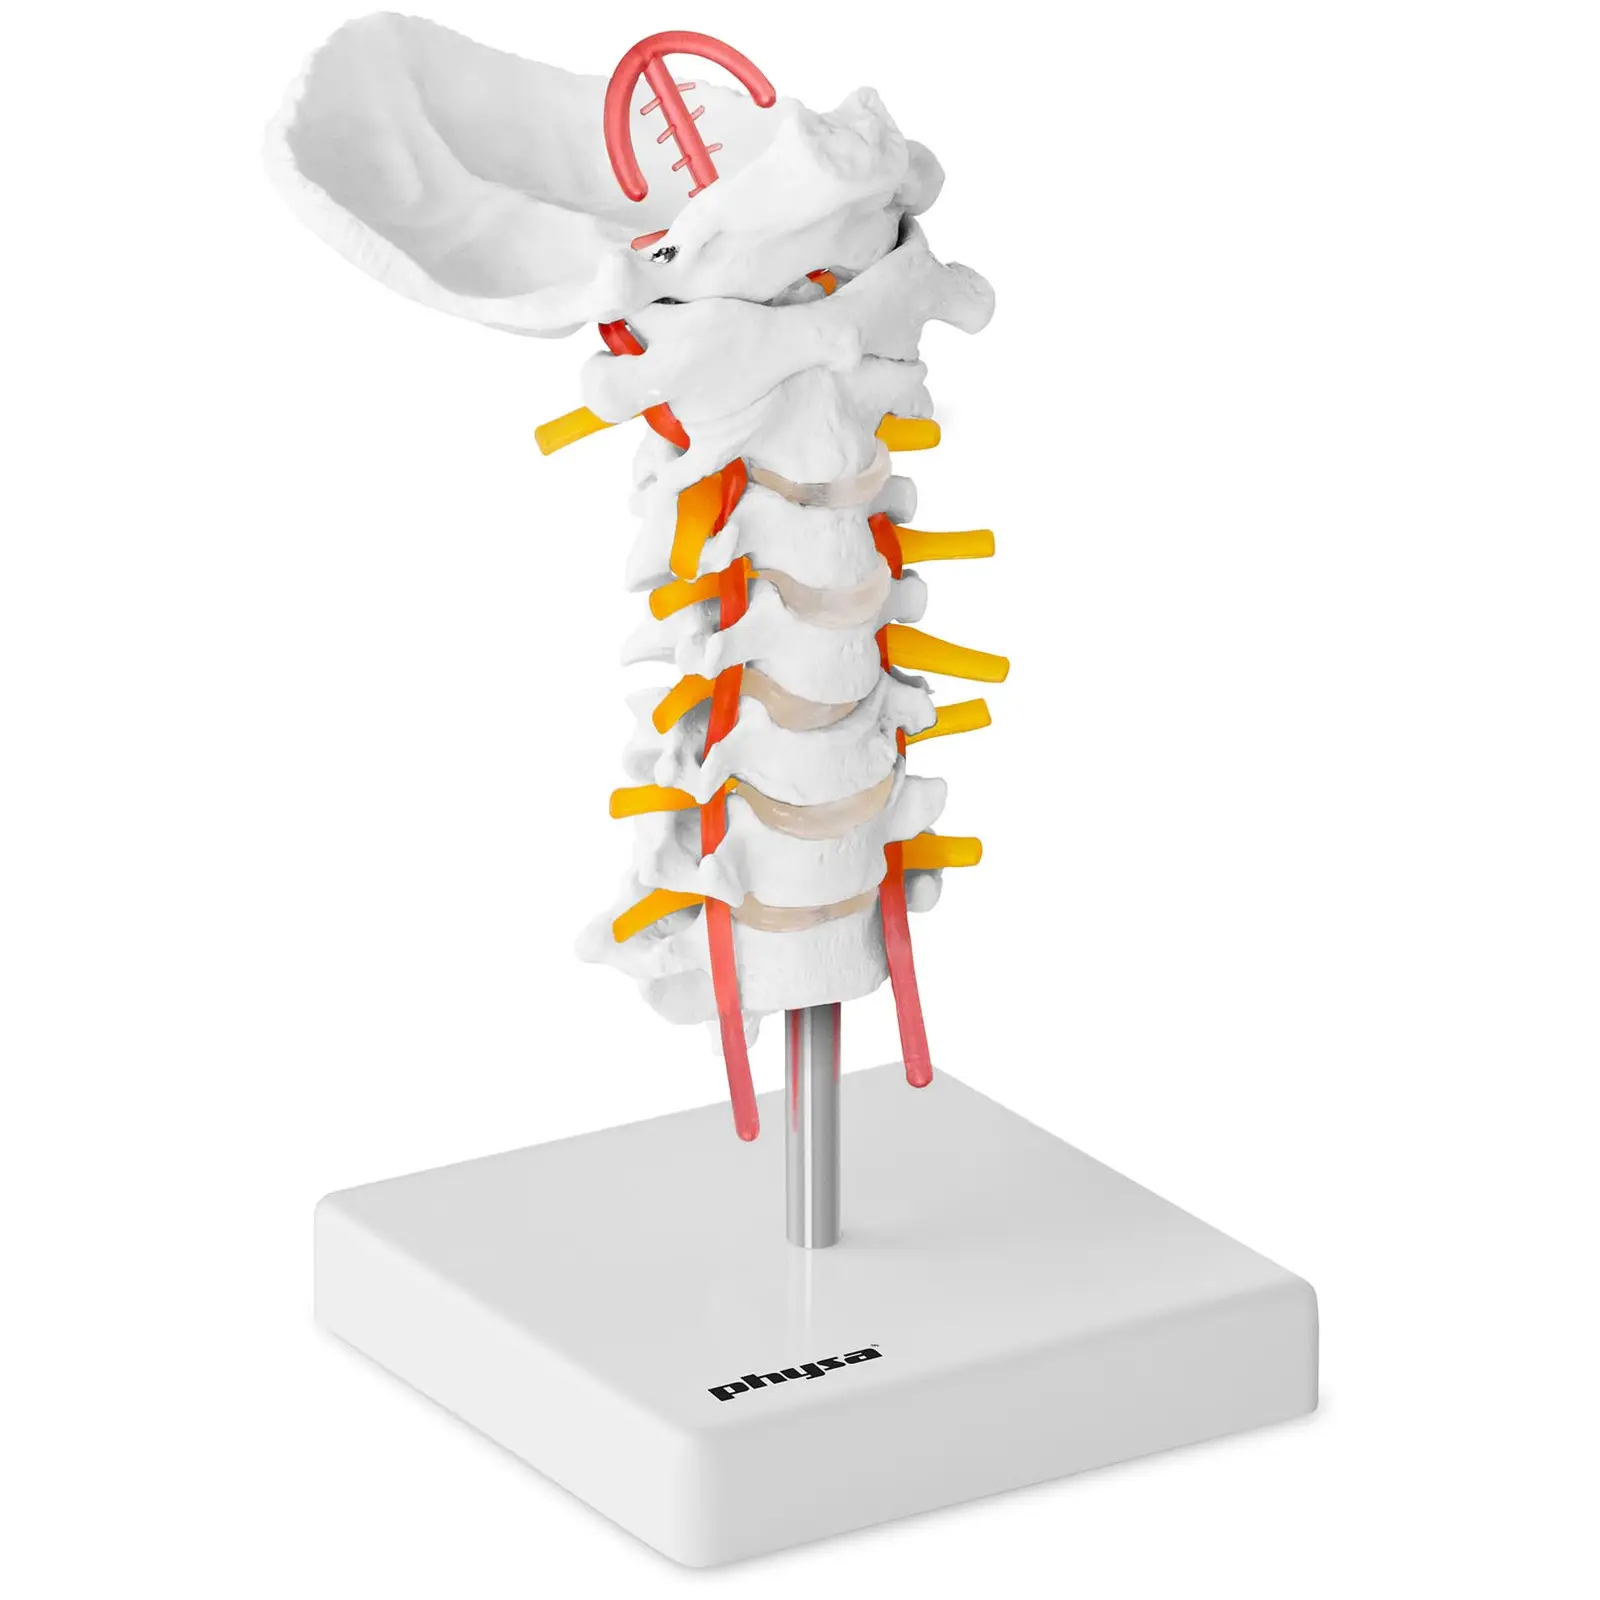 Cervikalrygg - Anatomisk modell PHY-SM-3